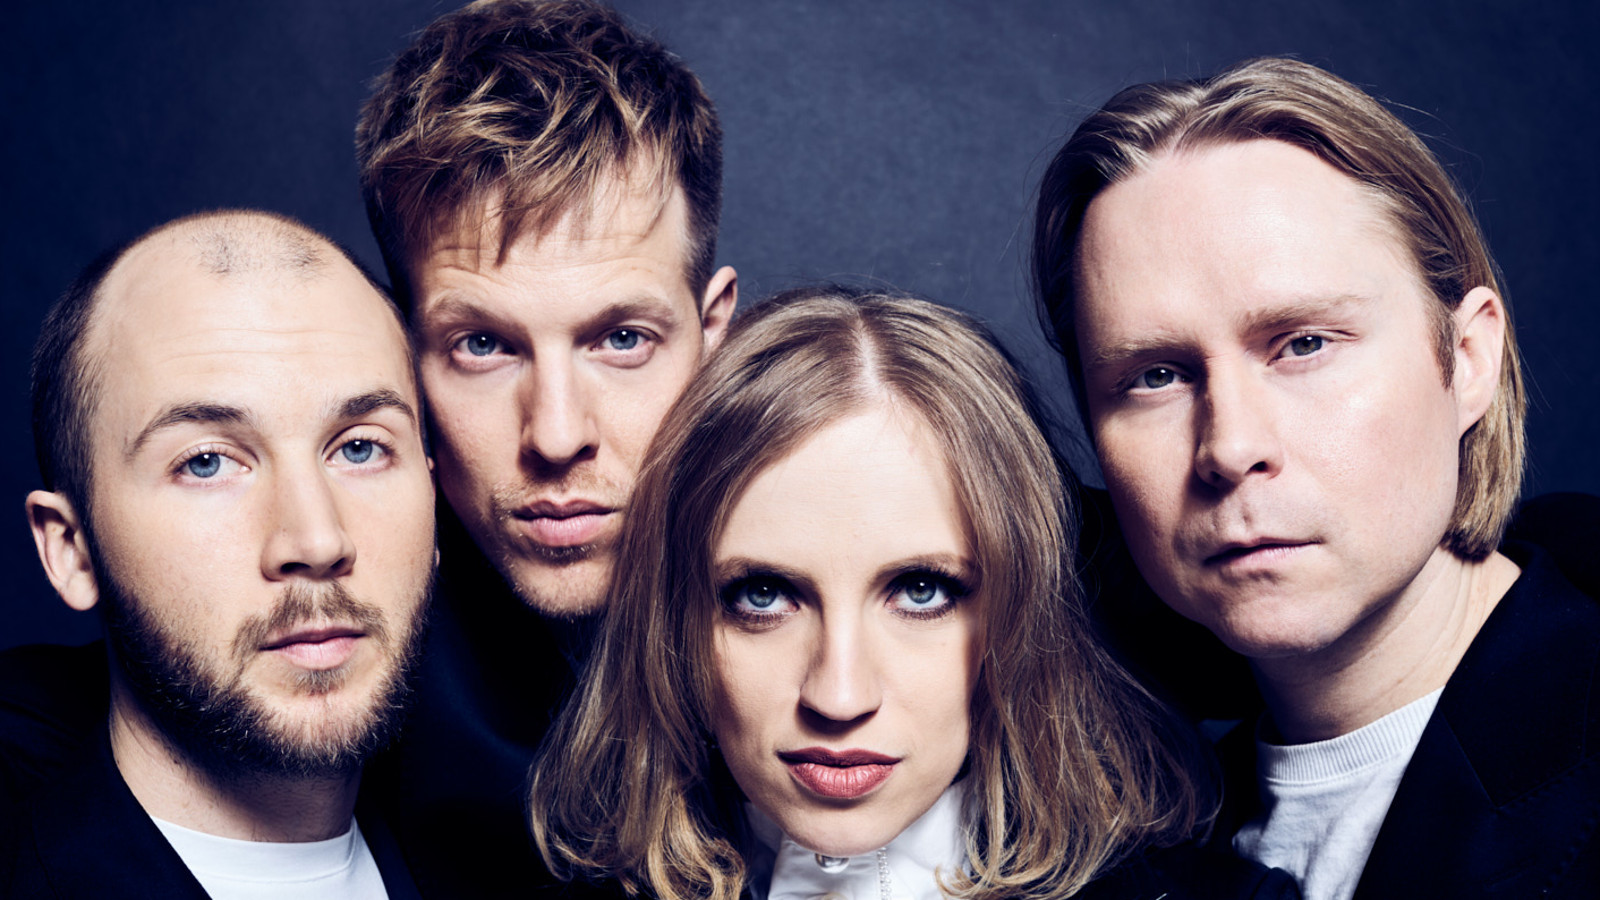 Kuvassa ovat Haloo Helsinki! bändin neljä jäsentä tiiviissä ryhmäkuvassa, jossa näkyvät vain kasvot.